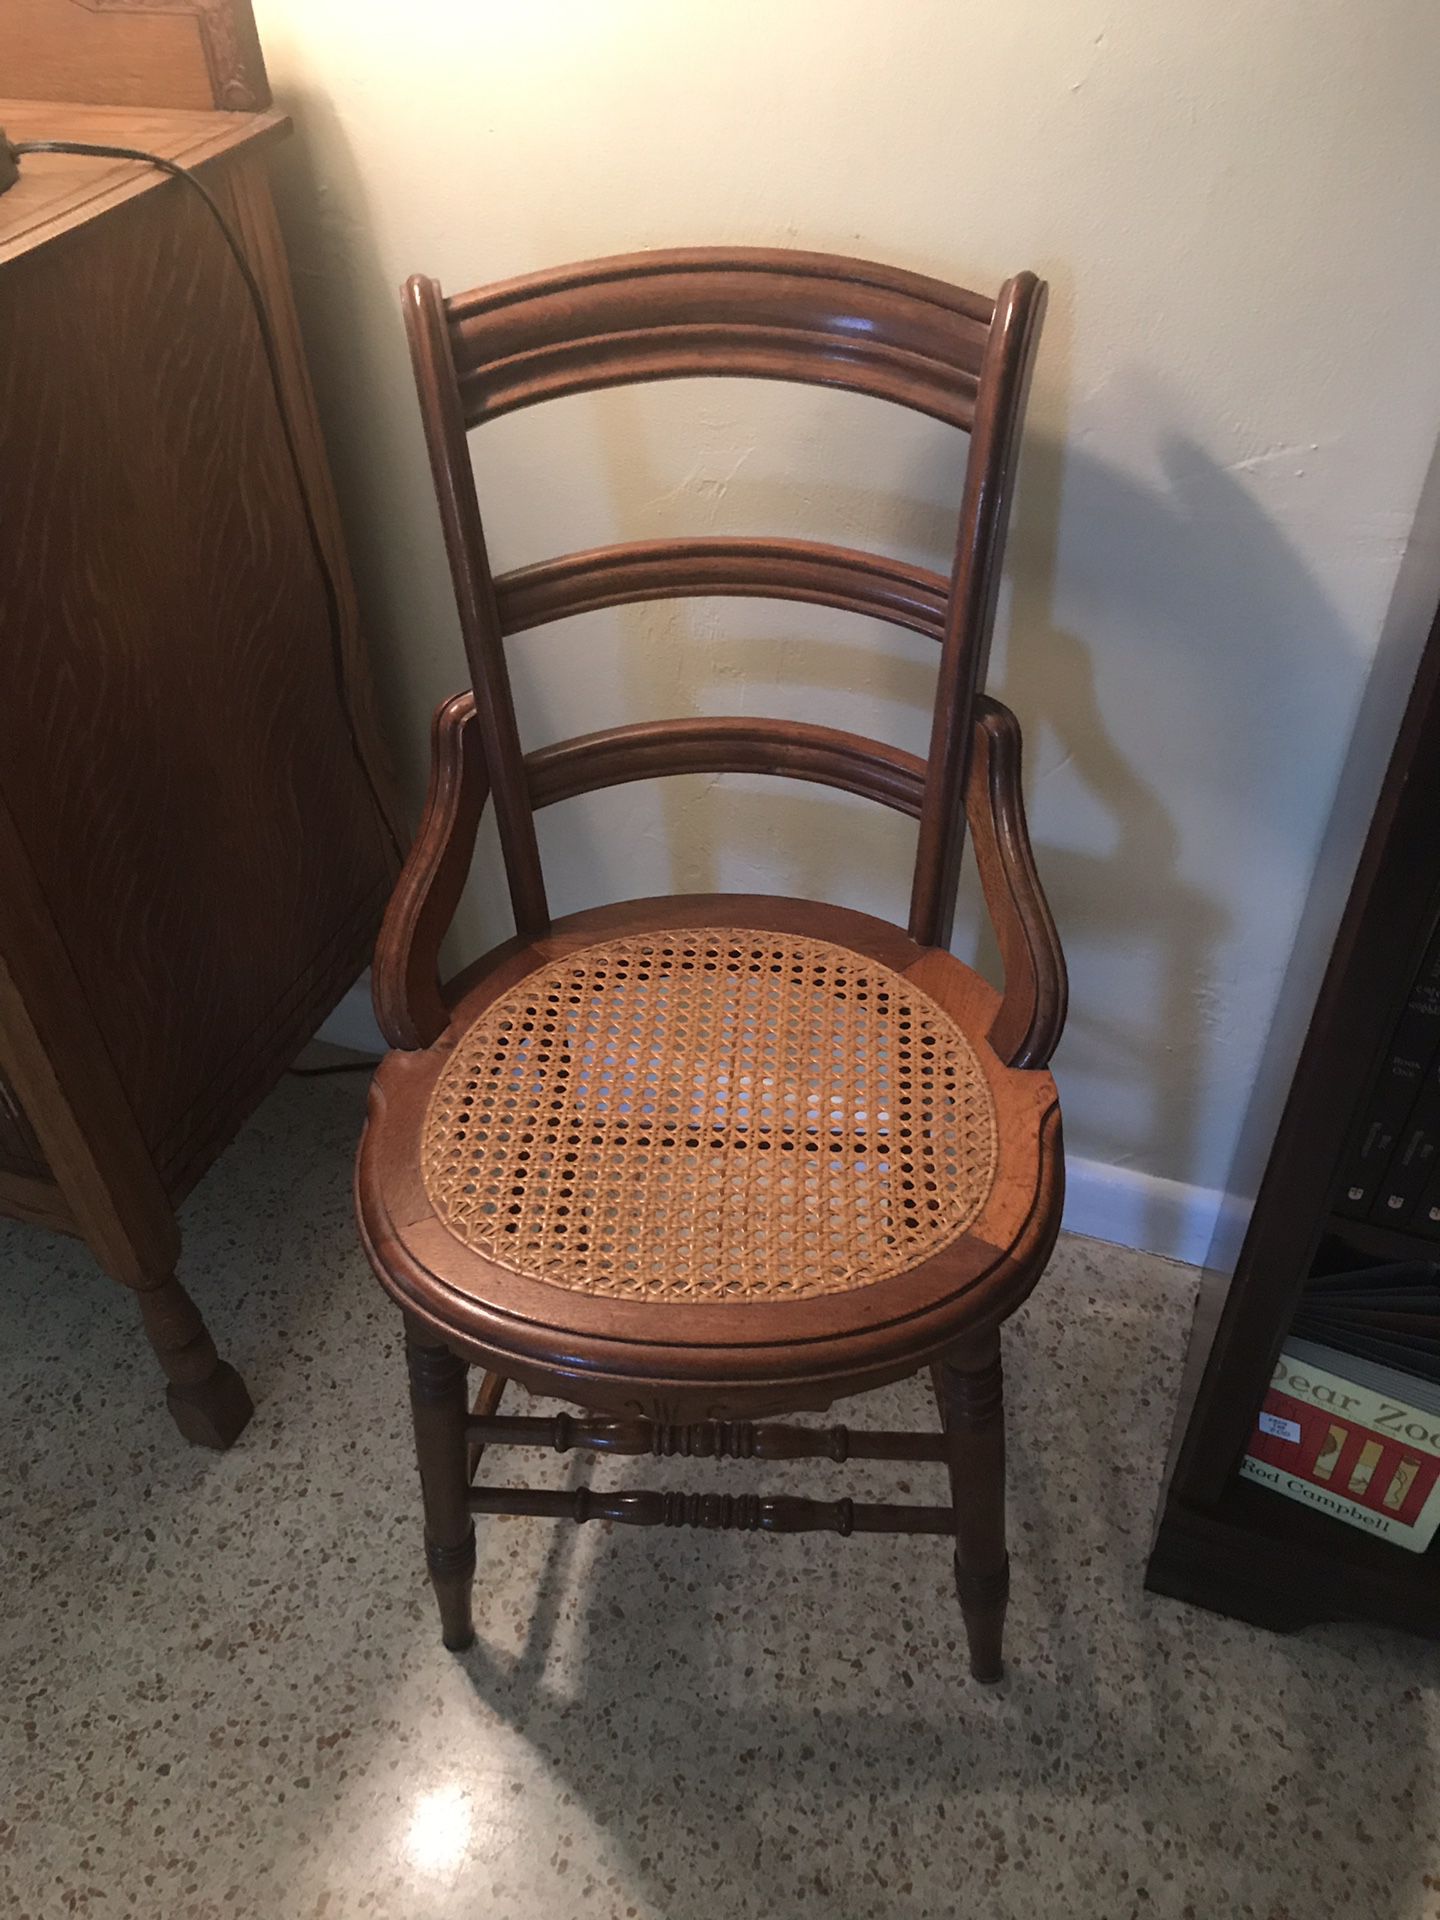 Antique Wicker bottom chair.